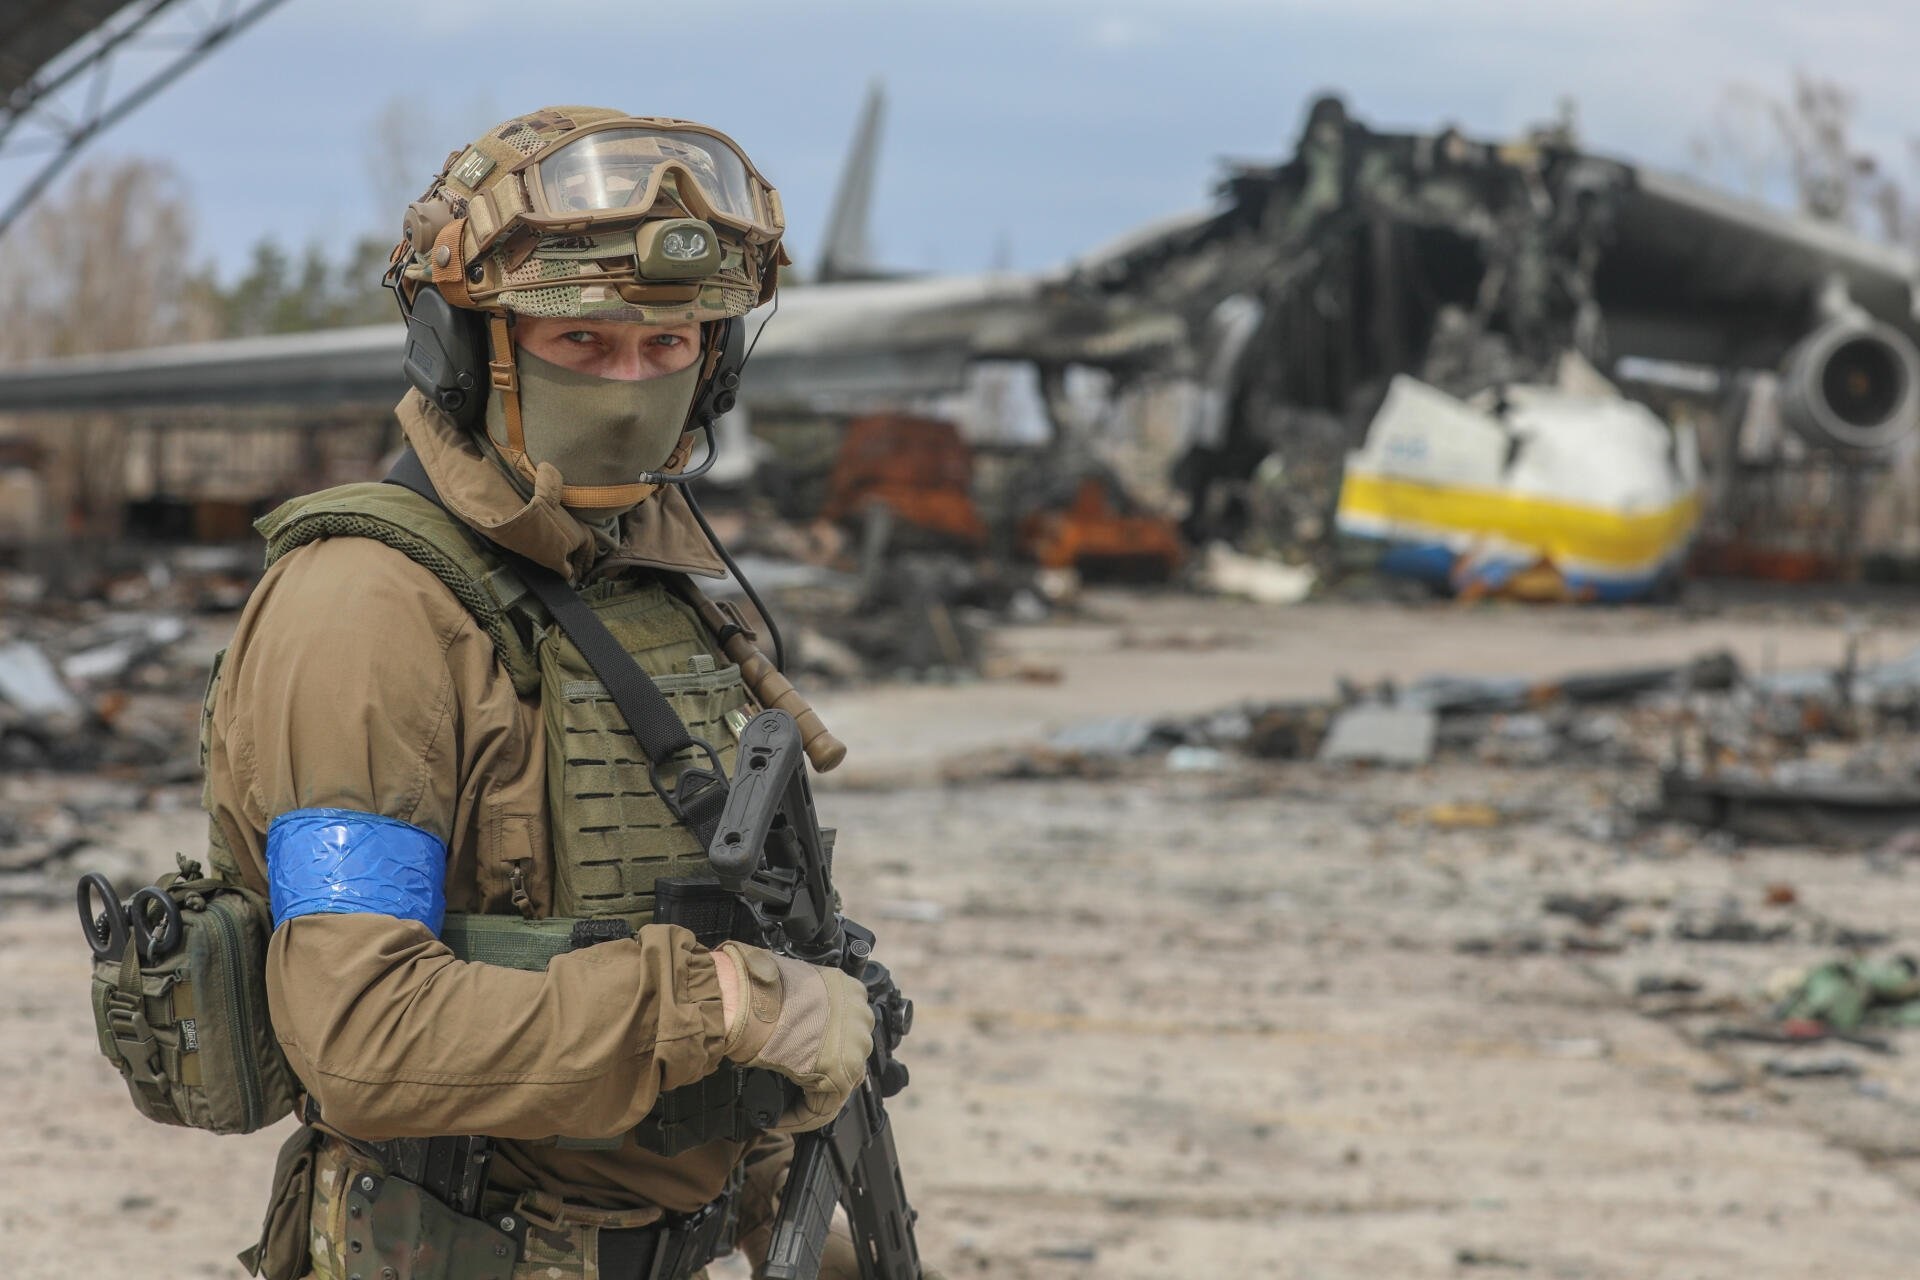 "Τεταμένη" η κατάσταση στα ουκρανικά μέτωπα - Εκκενώνονται πόλεις στην περιοχή της Χερσώνας